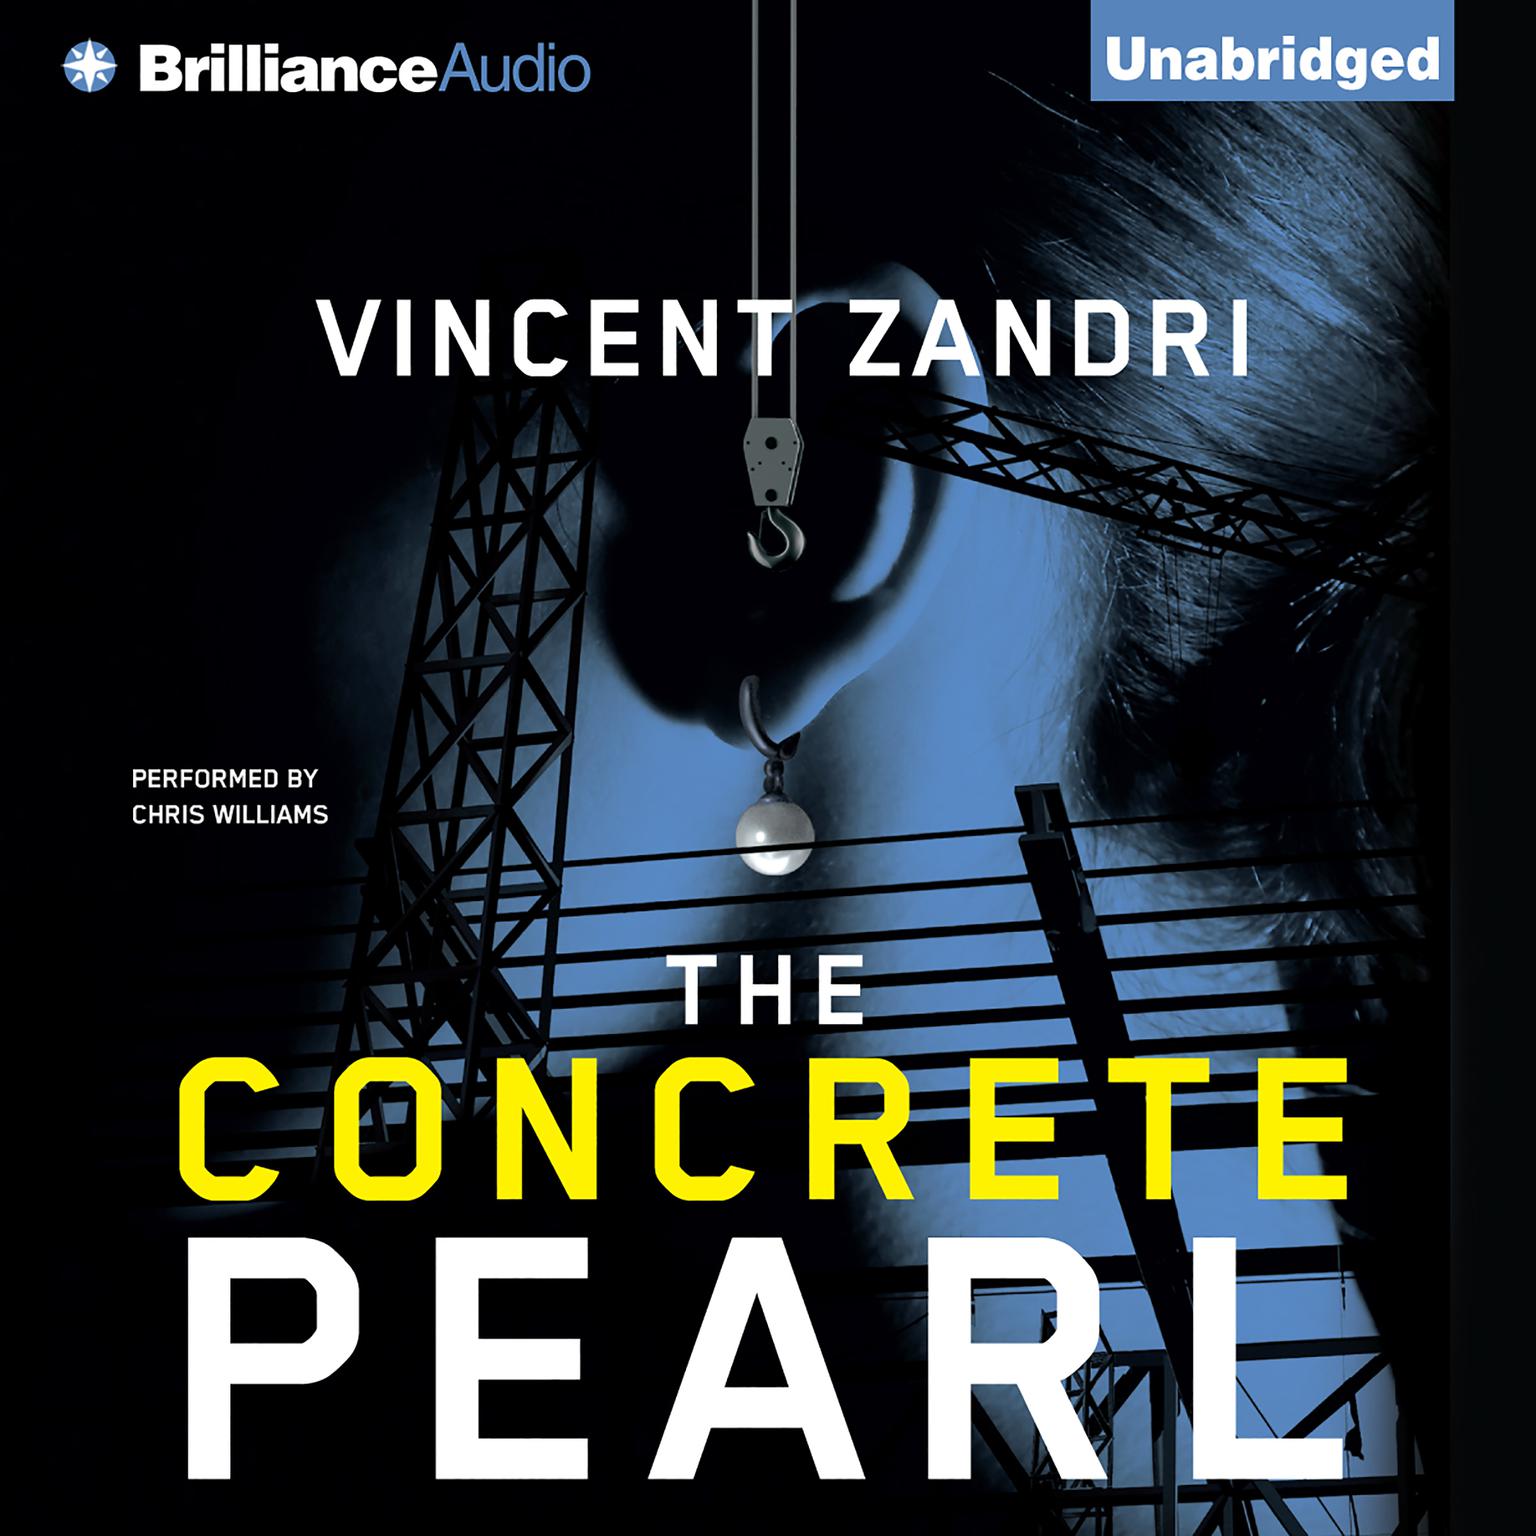 The Concrete Pearl Audiobook, by Vincent Zandri